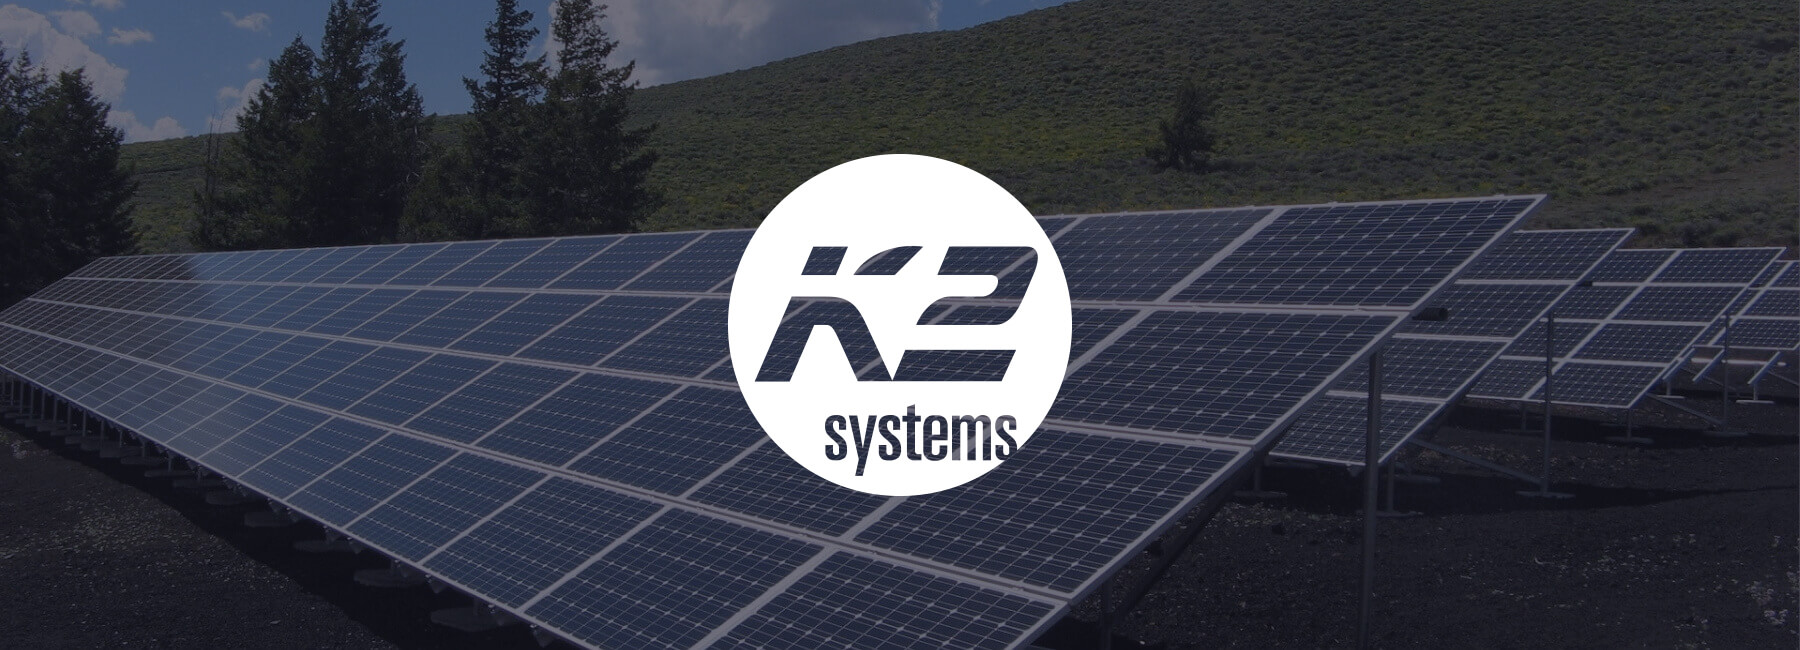 K2 Systems lanceert Mopinion in eigen planning software